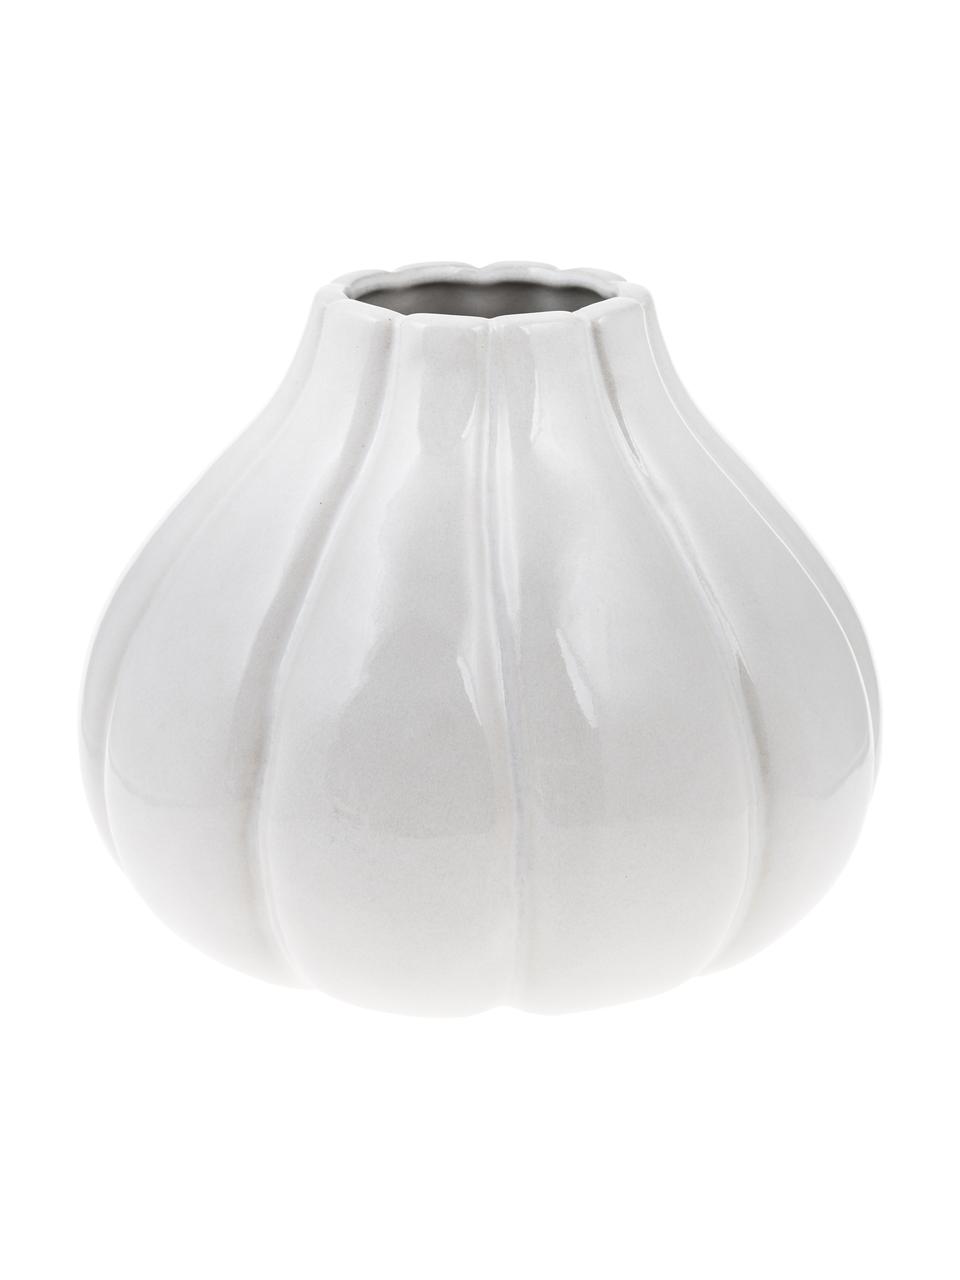 Deko-Vase Samoa, Steingut, Weiß, Ø 21 x H 19 cm